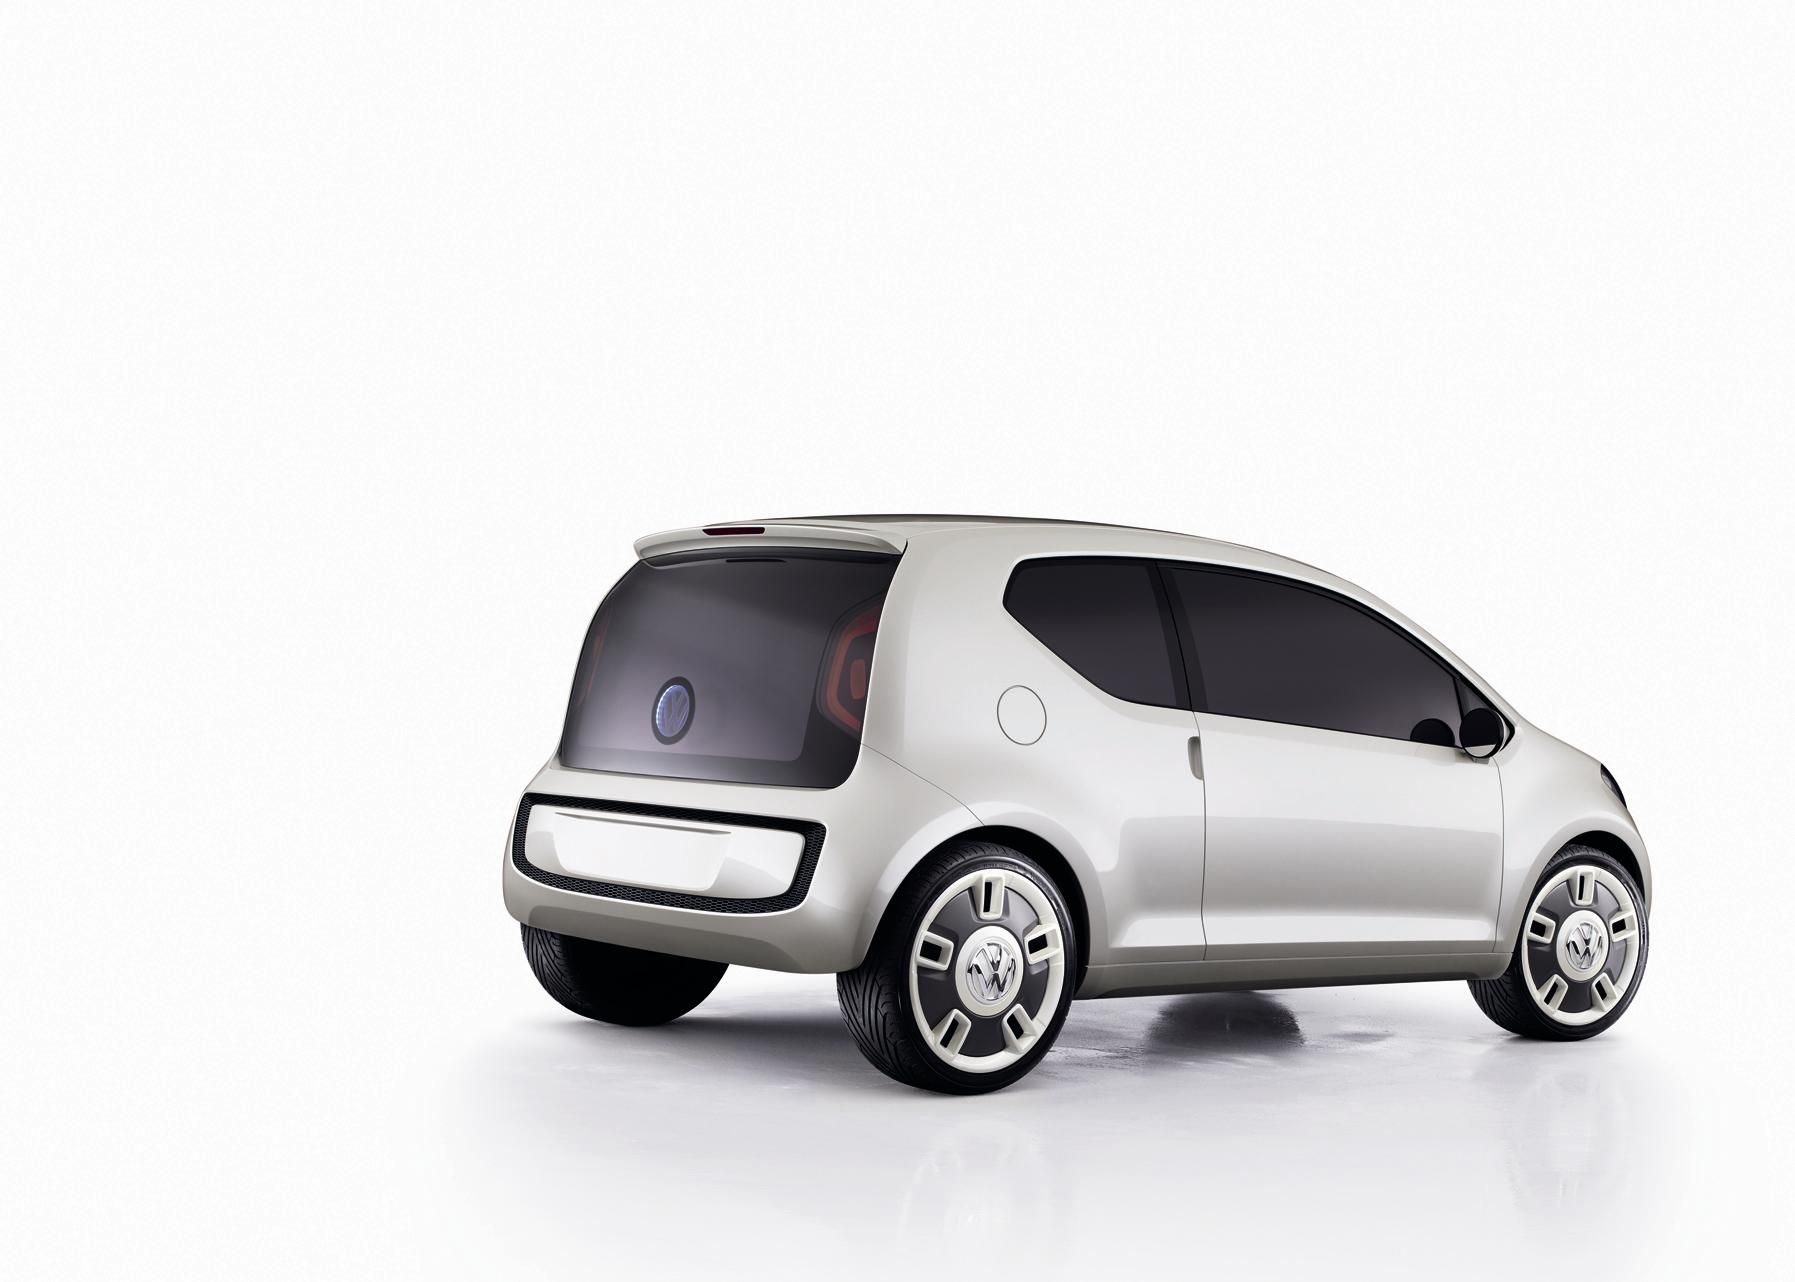 2007 Volkswagen Up! concept car